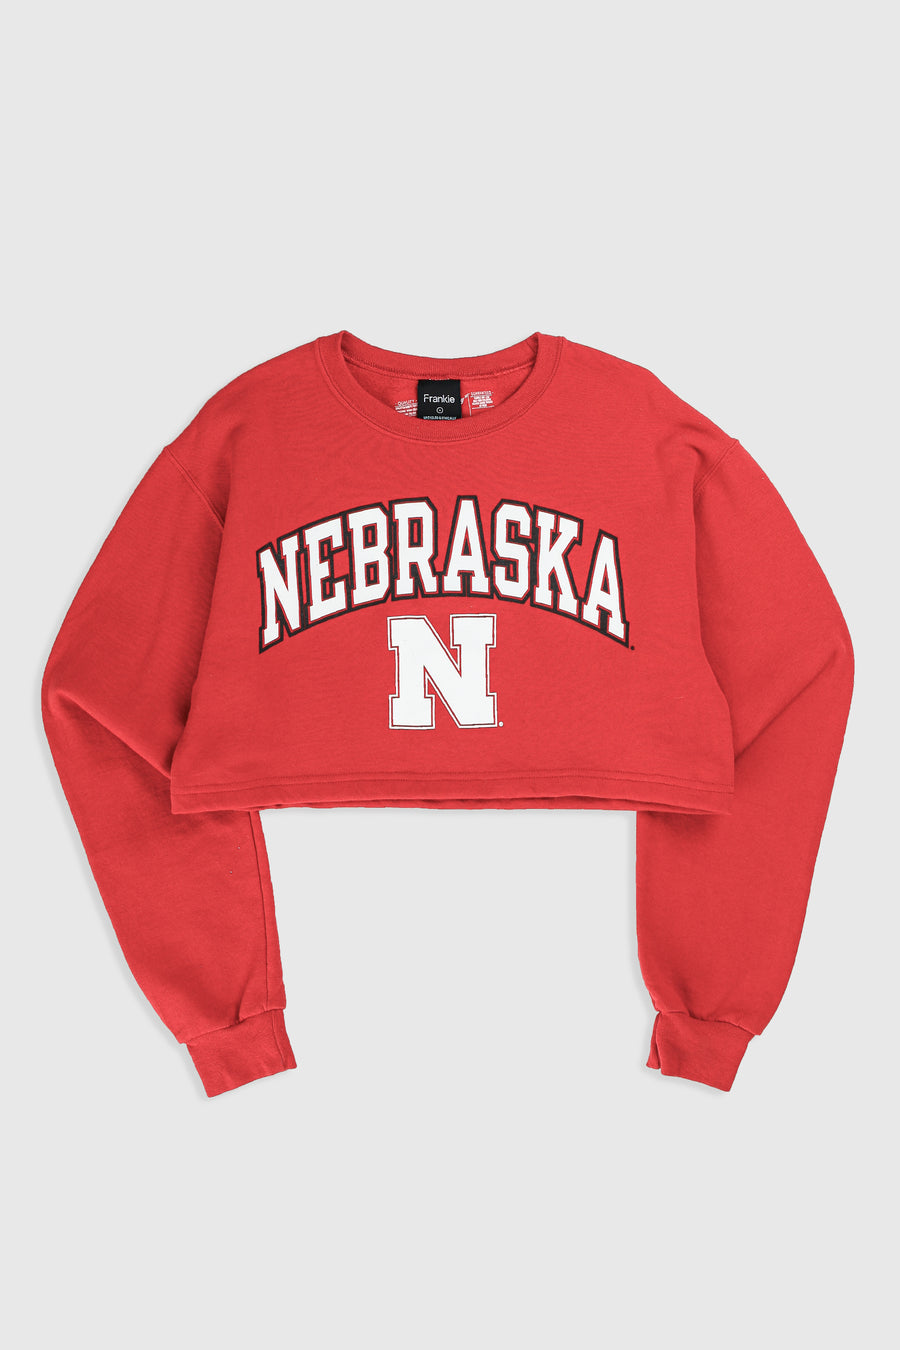 Rework Nebraska Crop Sweatshirt - S